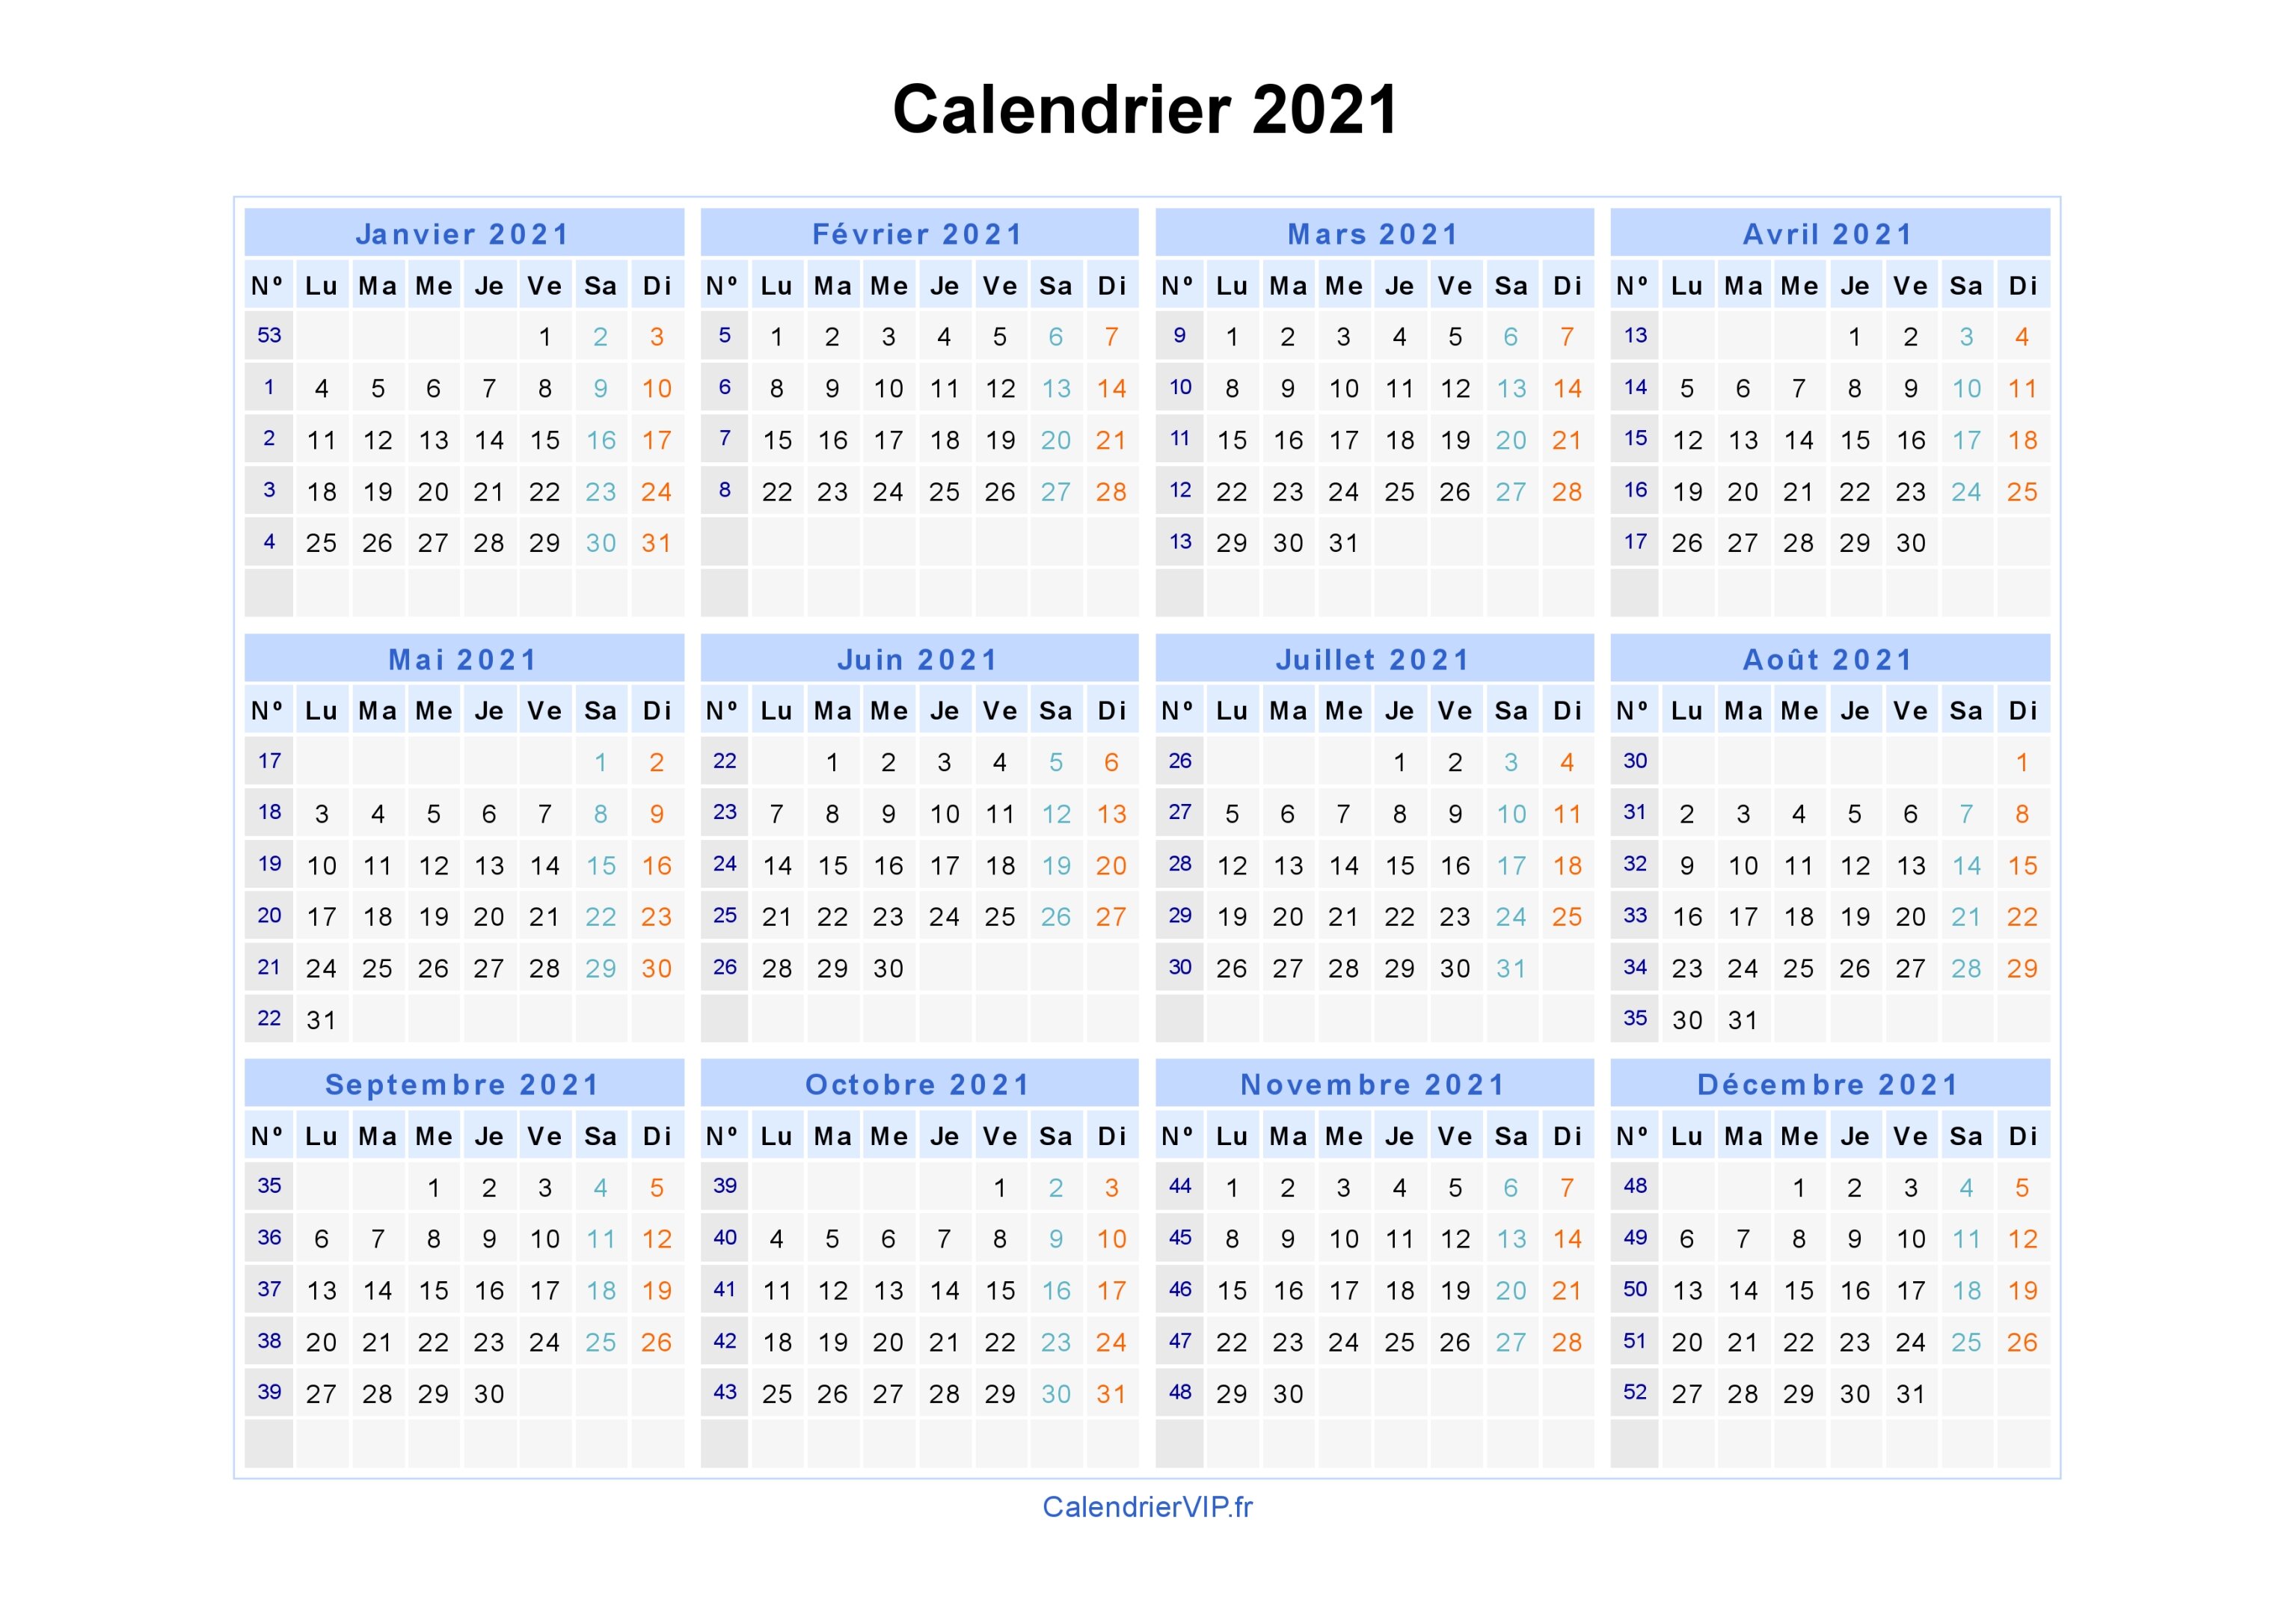 Calendrier 2021 Free Calendrier 2021 à imprimer gratuit en PDF et Excel